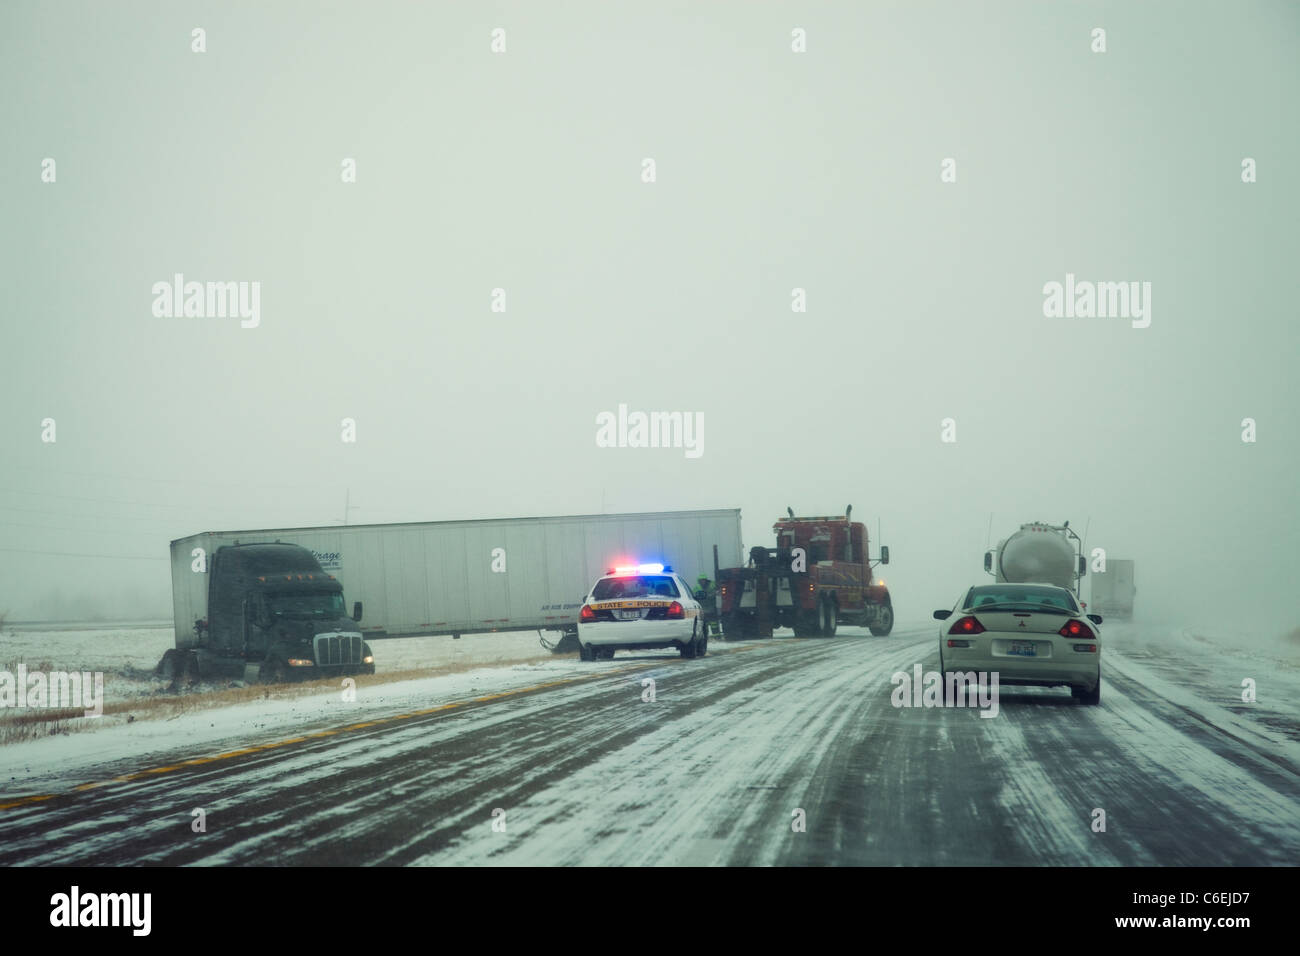 États-unis, Illinois, Springfield, Semi truck accident sur l'autoroute pendant une tempête Banque D'Images